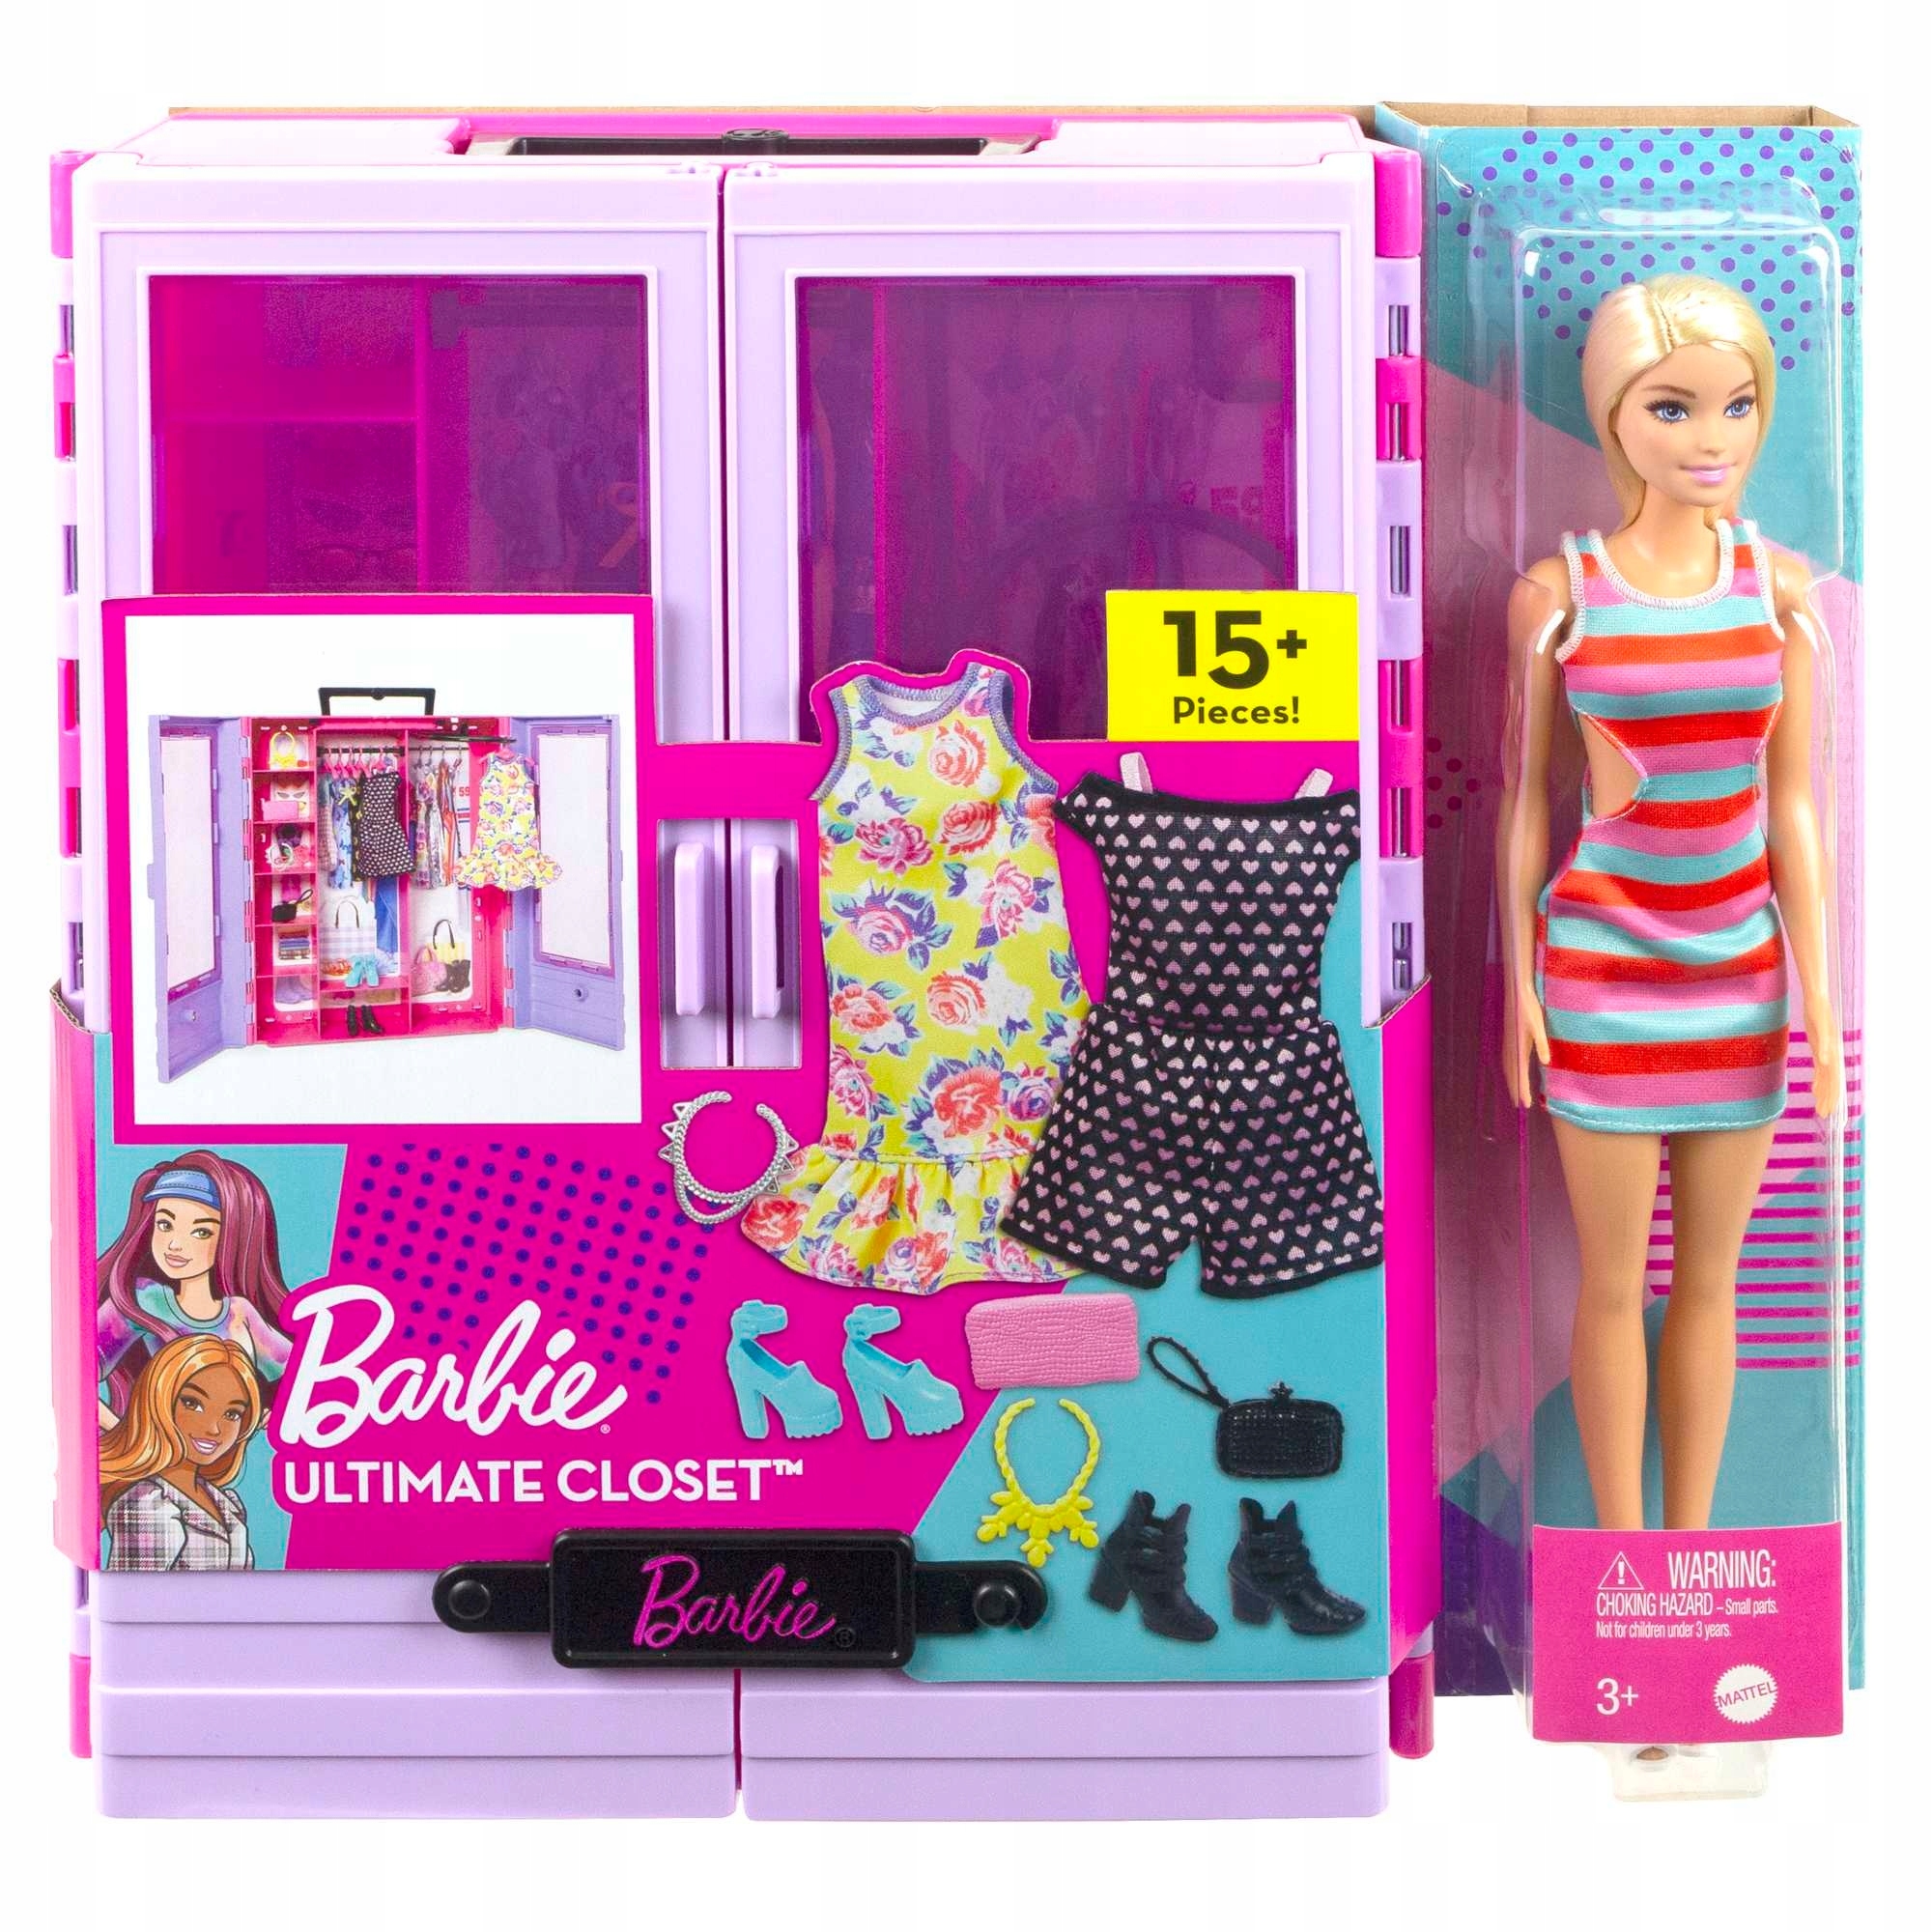 Barbie Fashionistas Ultimate Closet Accessory шкаф. Домик гардероб для Барби. Набор 4 Барби с аксессуарами. Гардероб для Барби ногти.